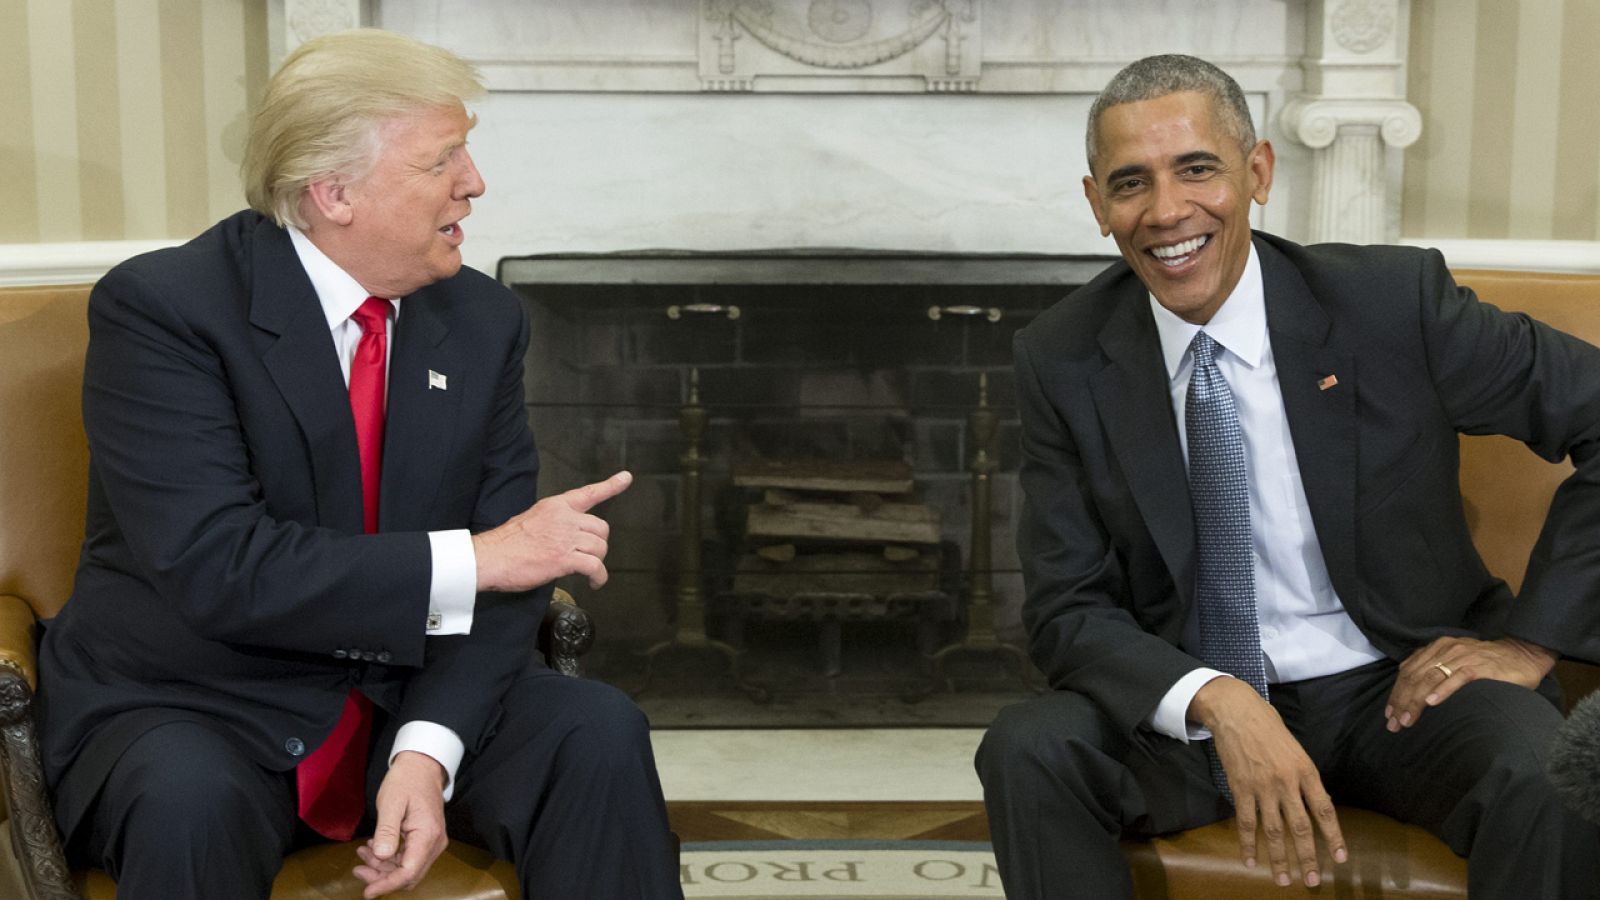 El presidente Obama recibe al presidente electo Donald Trump en la Casa Blanca, en una imagen de archivo